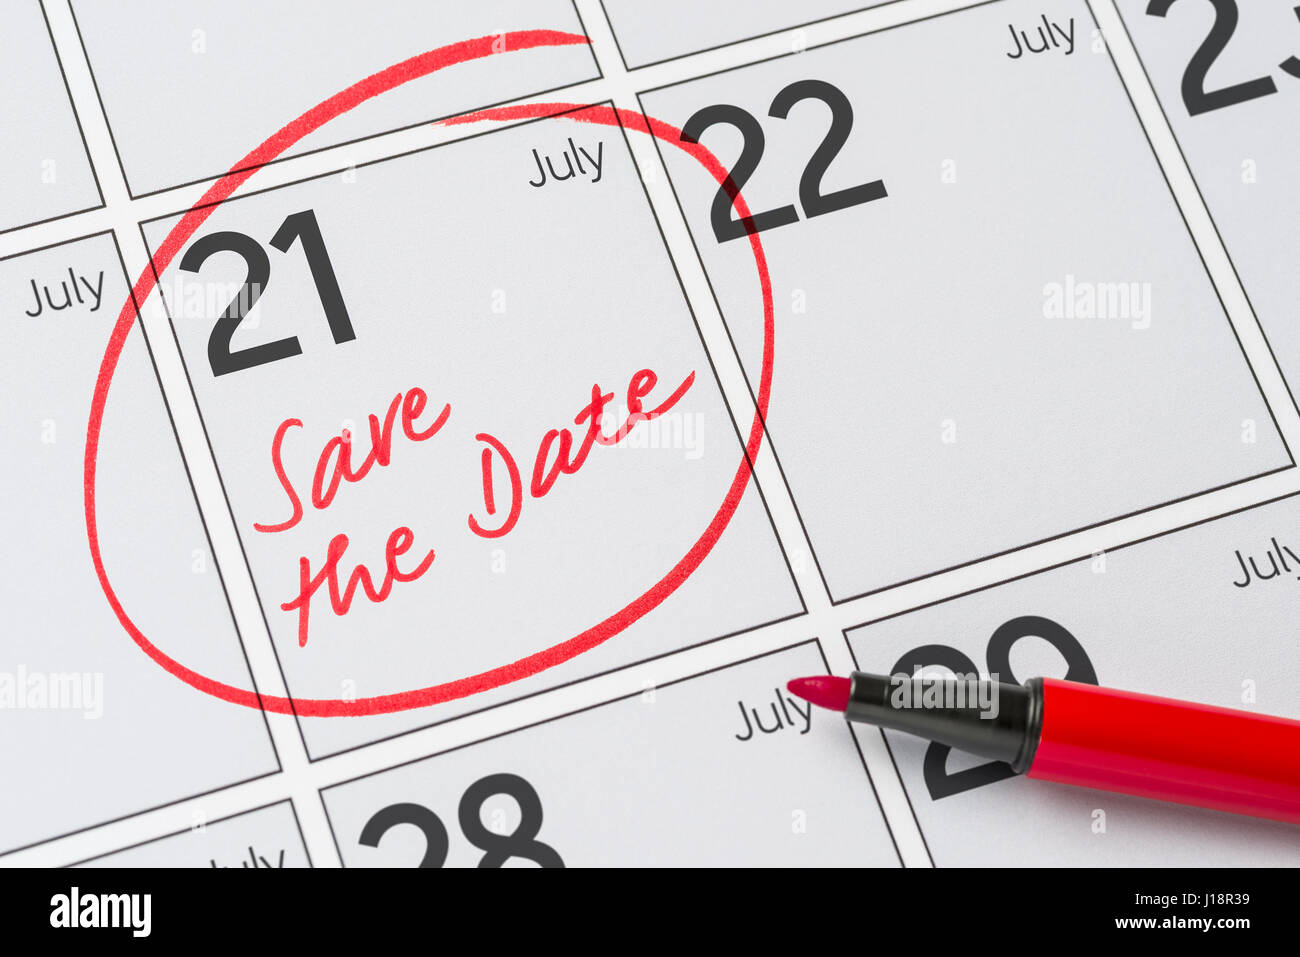 Enregistrer la date inscrite sur un calendrier - Juillet 21 Banque D'Images